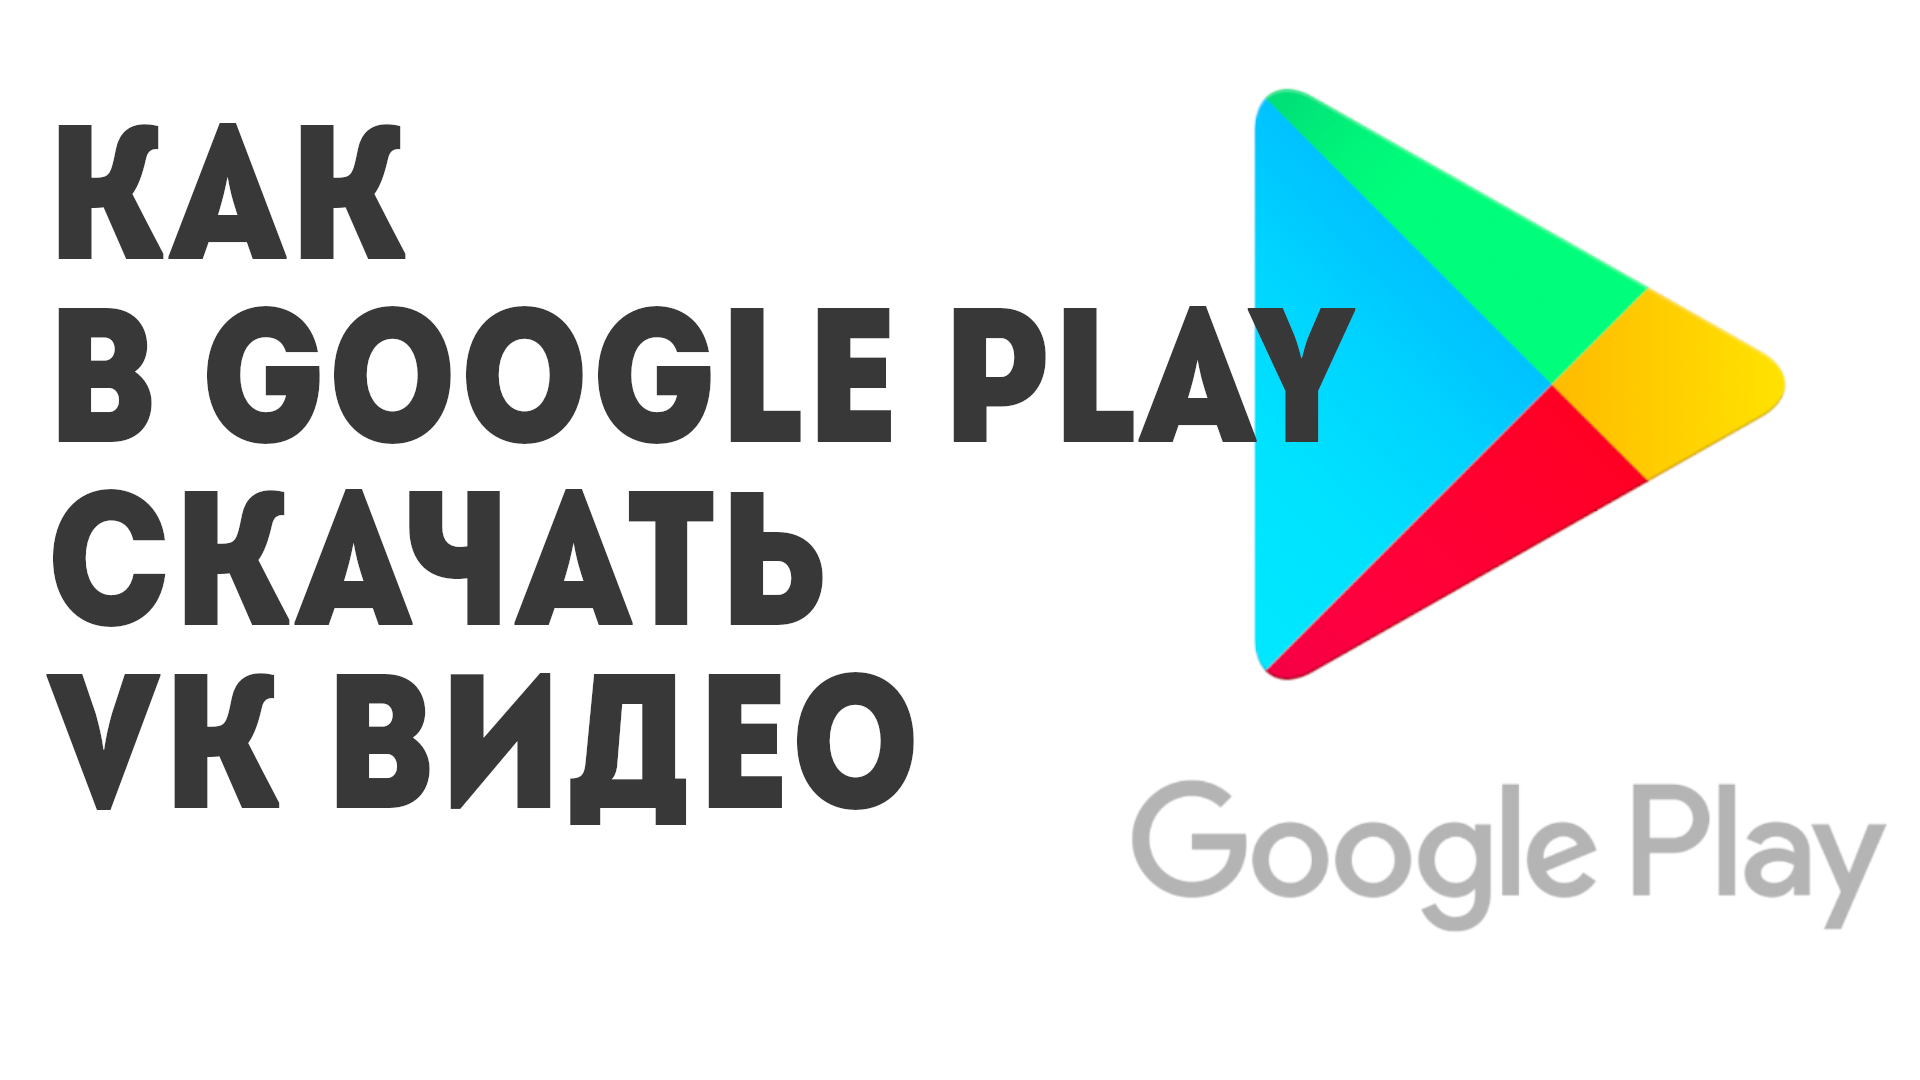 Как в Google Play скачать VK Видео